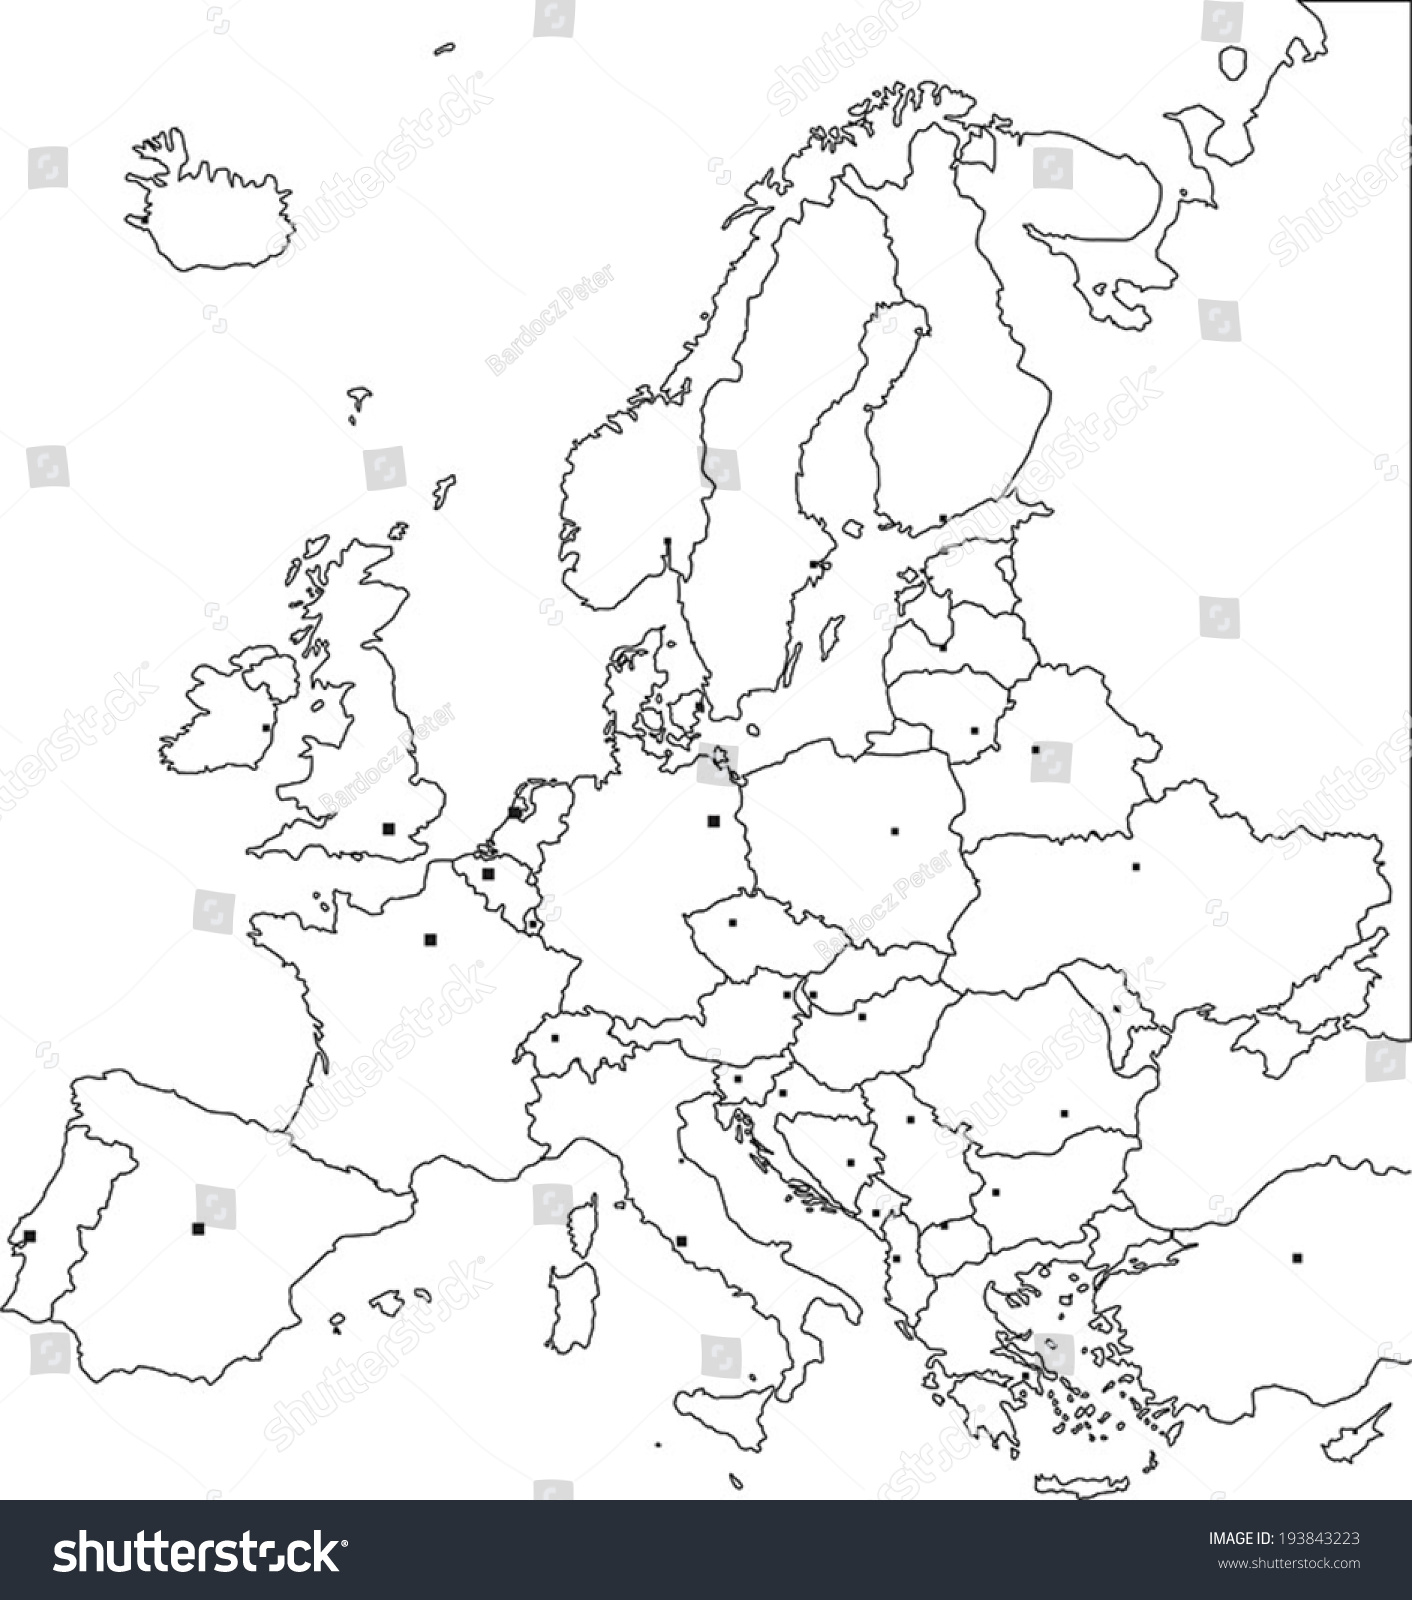 Политическая карта зарубежной Европы пустая